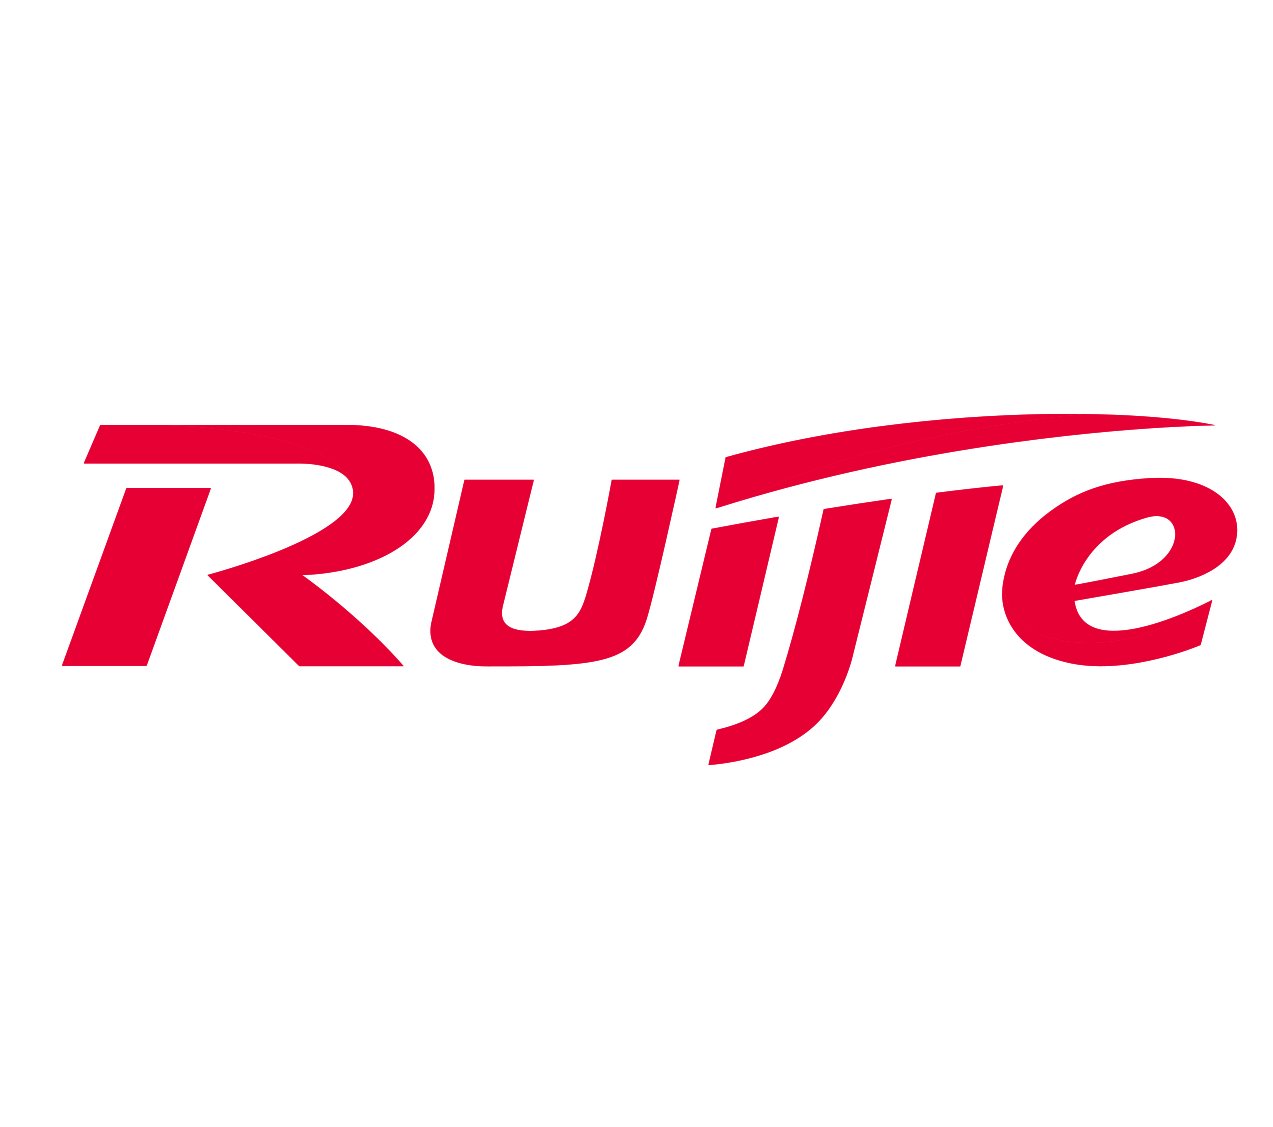 Ruijie/Reyee